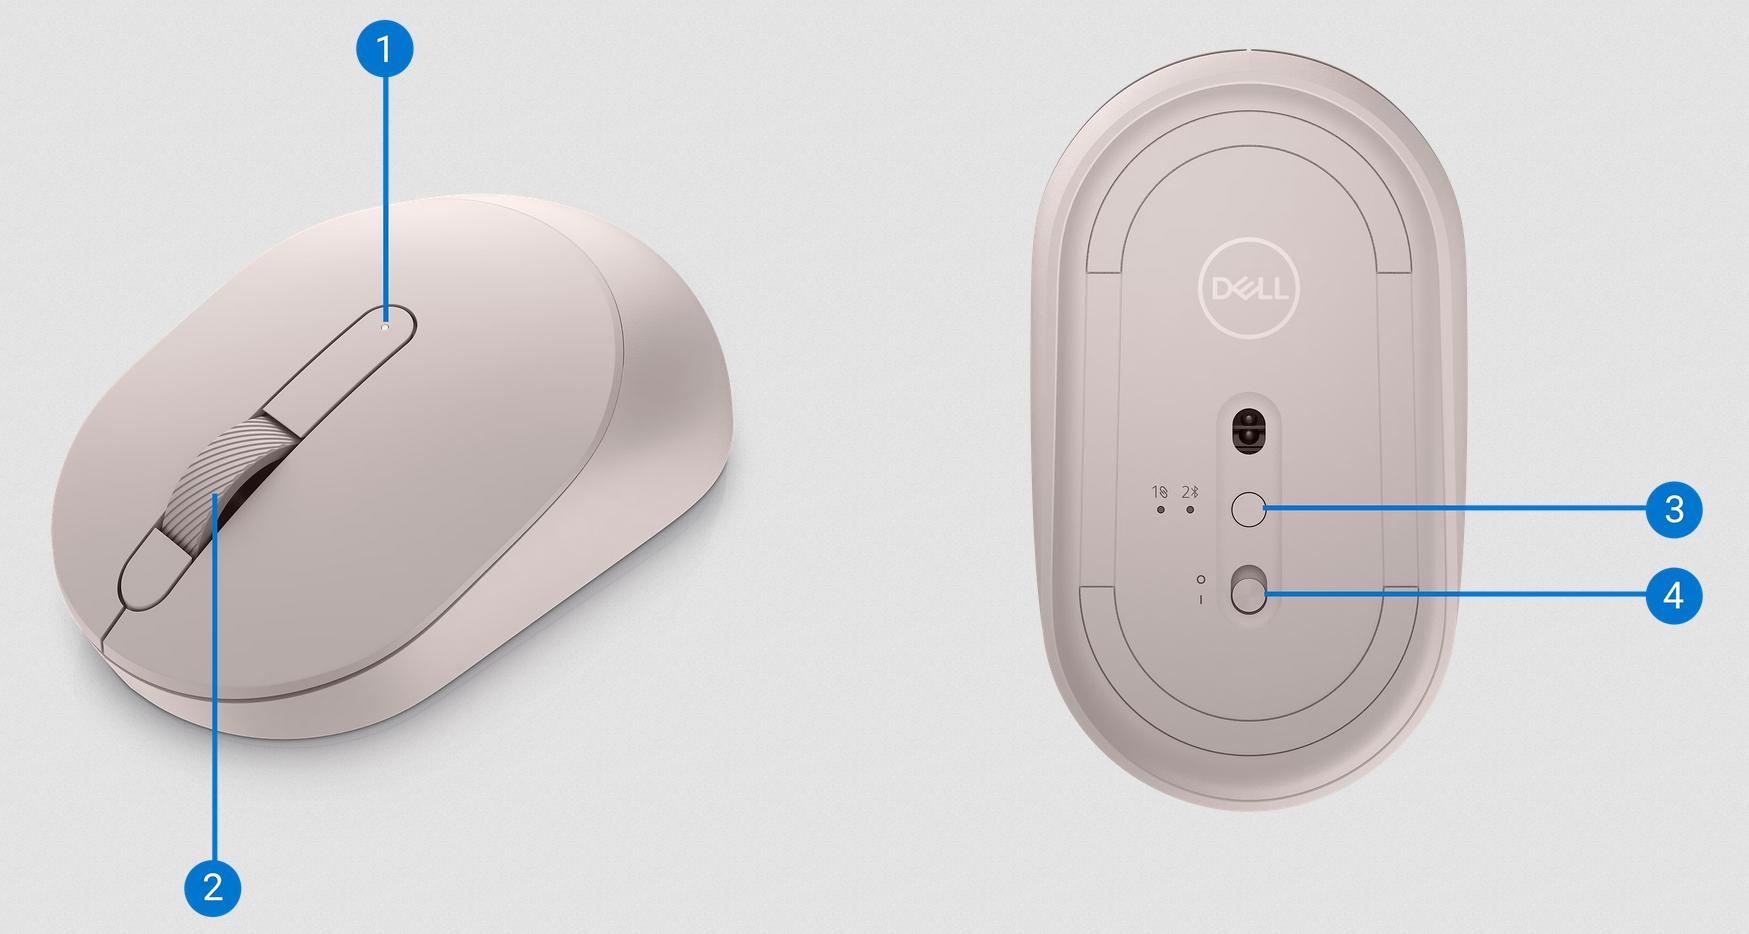 Bezprzewodowa mysz optyczna Dell MS3320W Mobile Wireless Mouse Ash Pink - schemat budowy i układ przycisków: